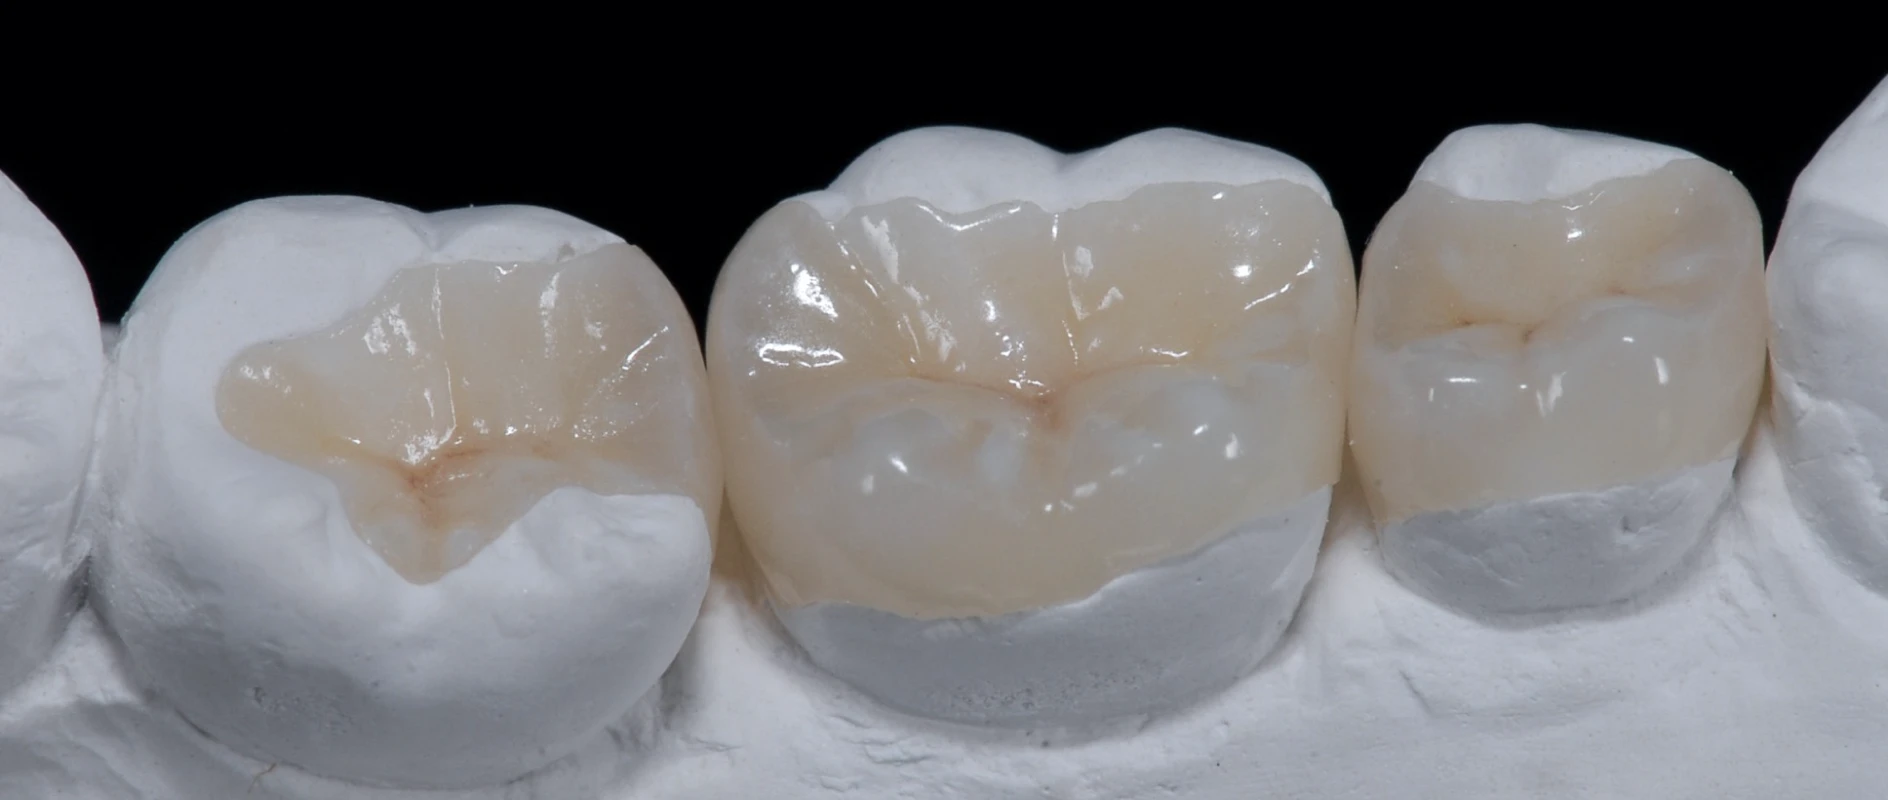 Traitement esthétique à l'aide de composites au cabinet dentaire du Dr Bocquet